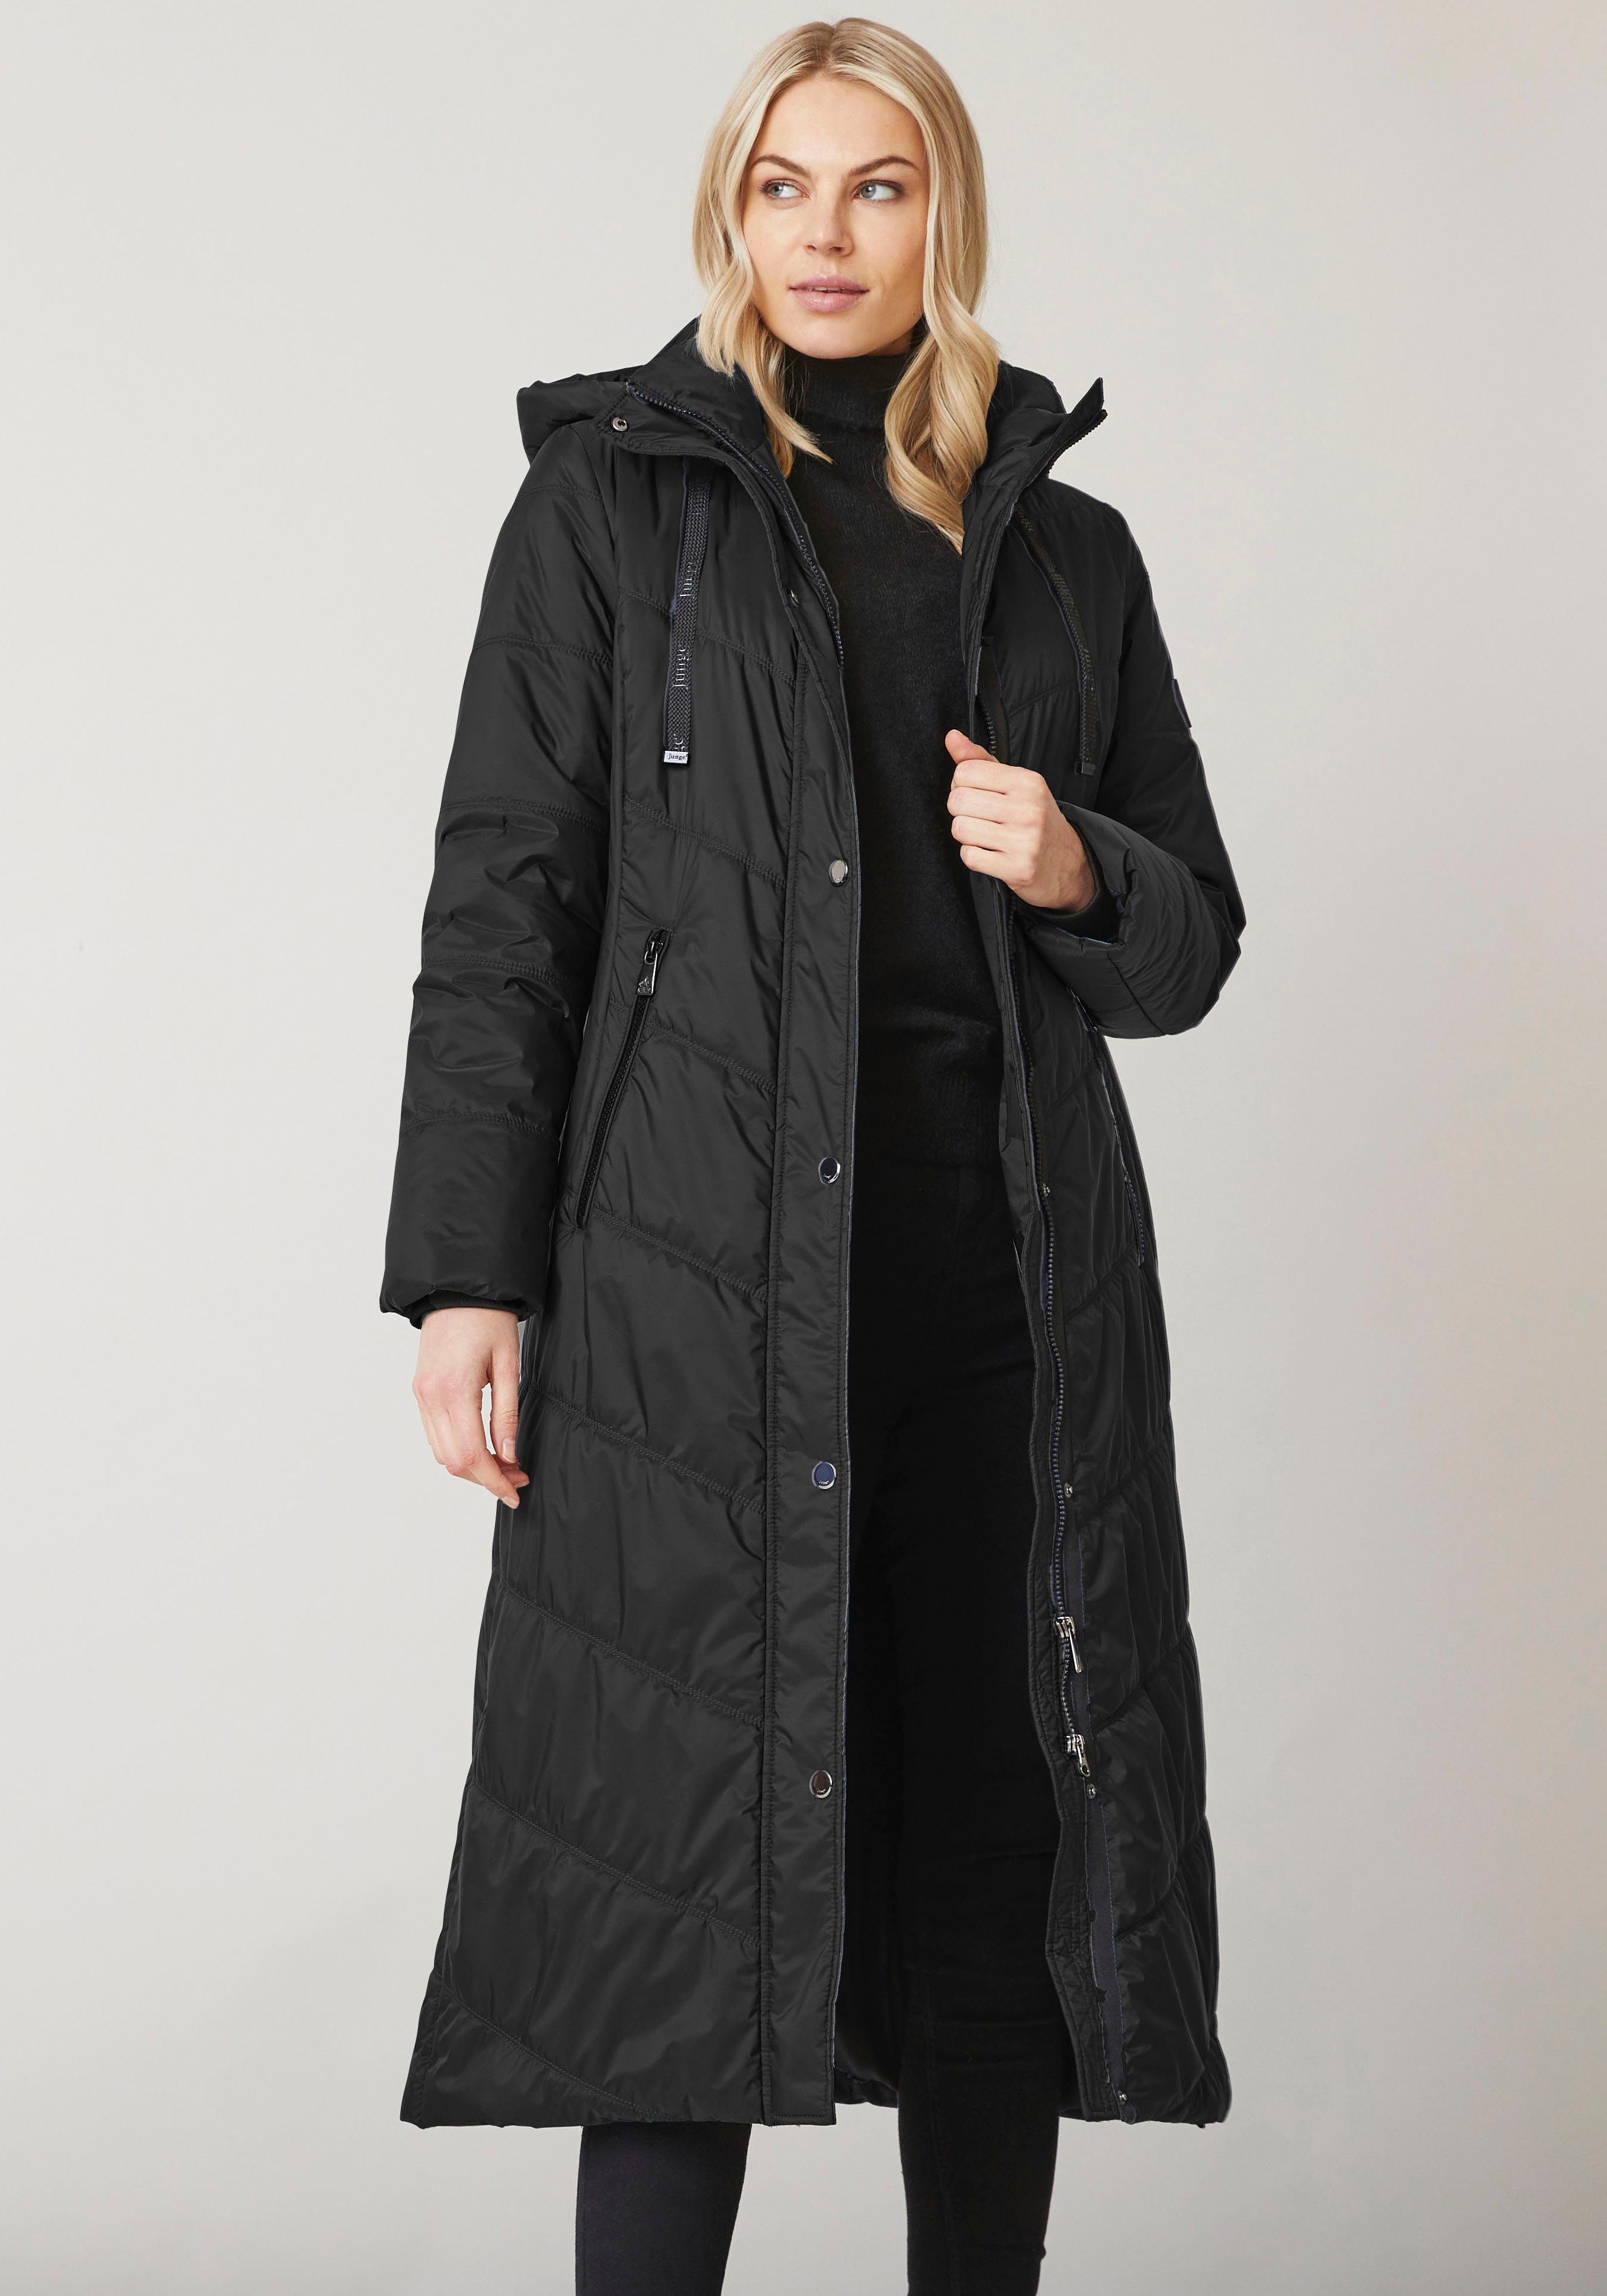 Junge Danmark Winterjacke Ina mit seitlichen Reißverschlusstaschen black